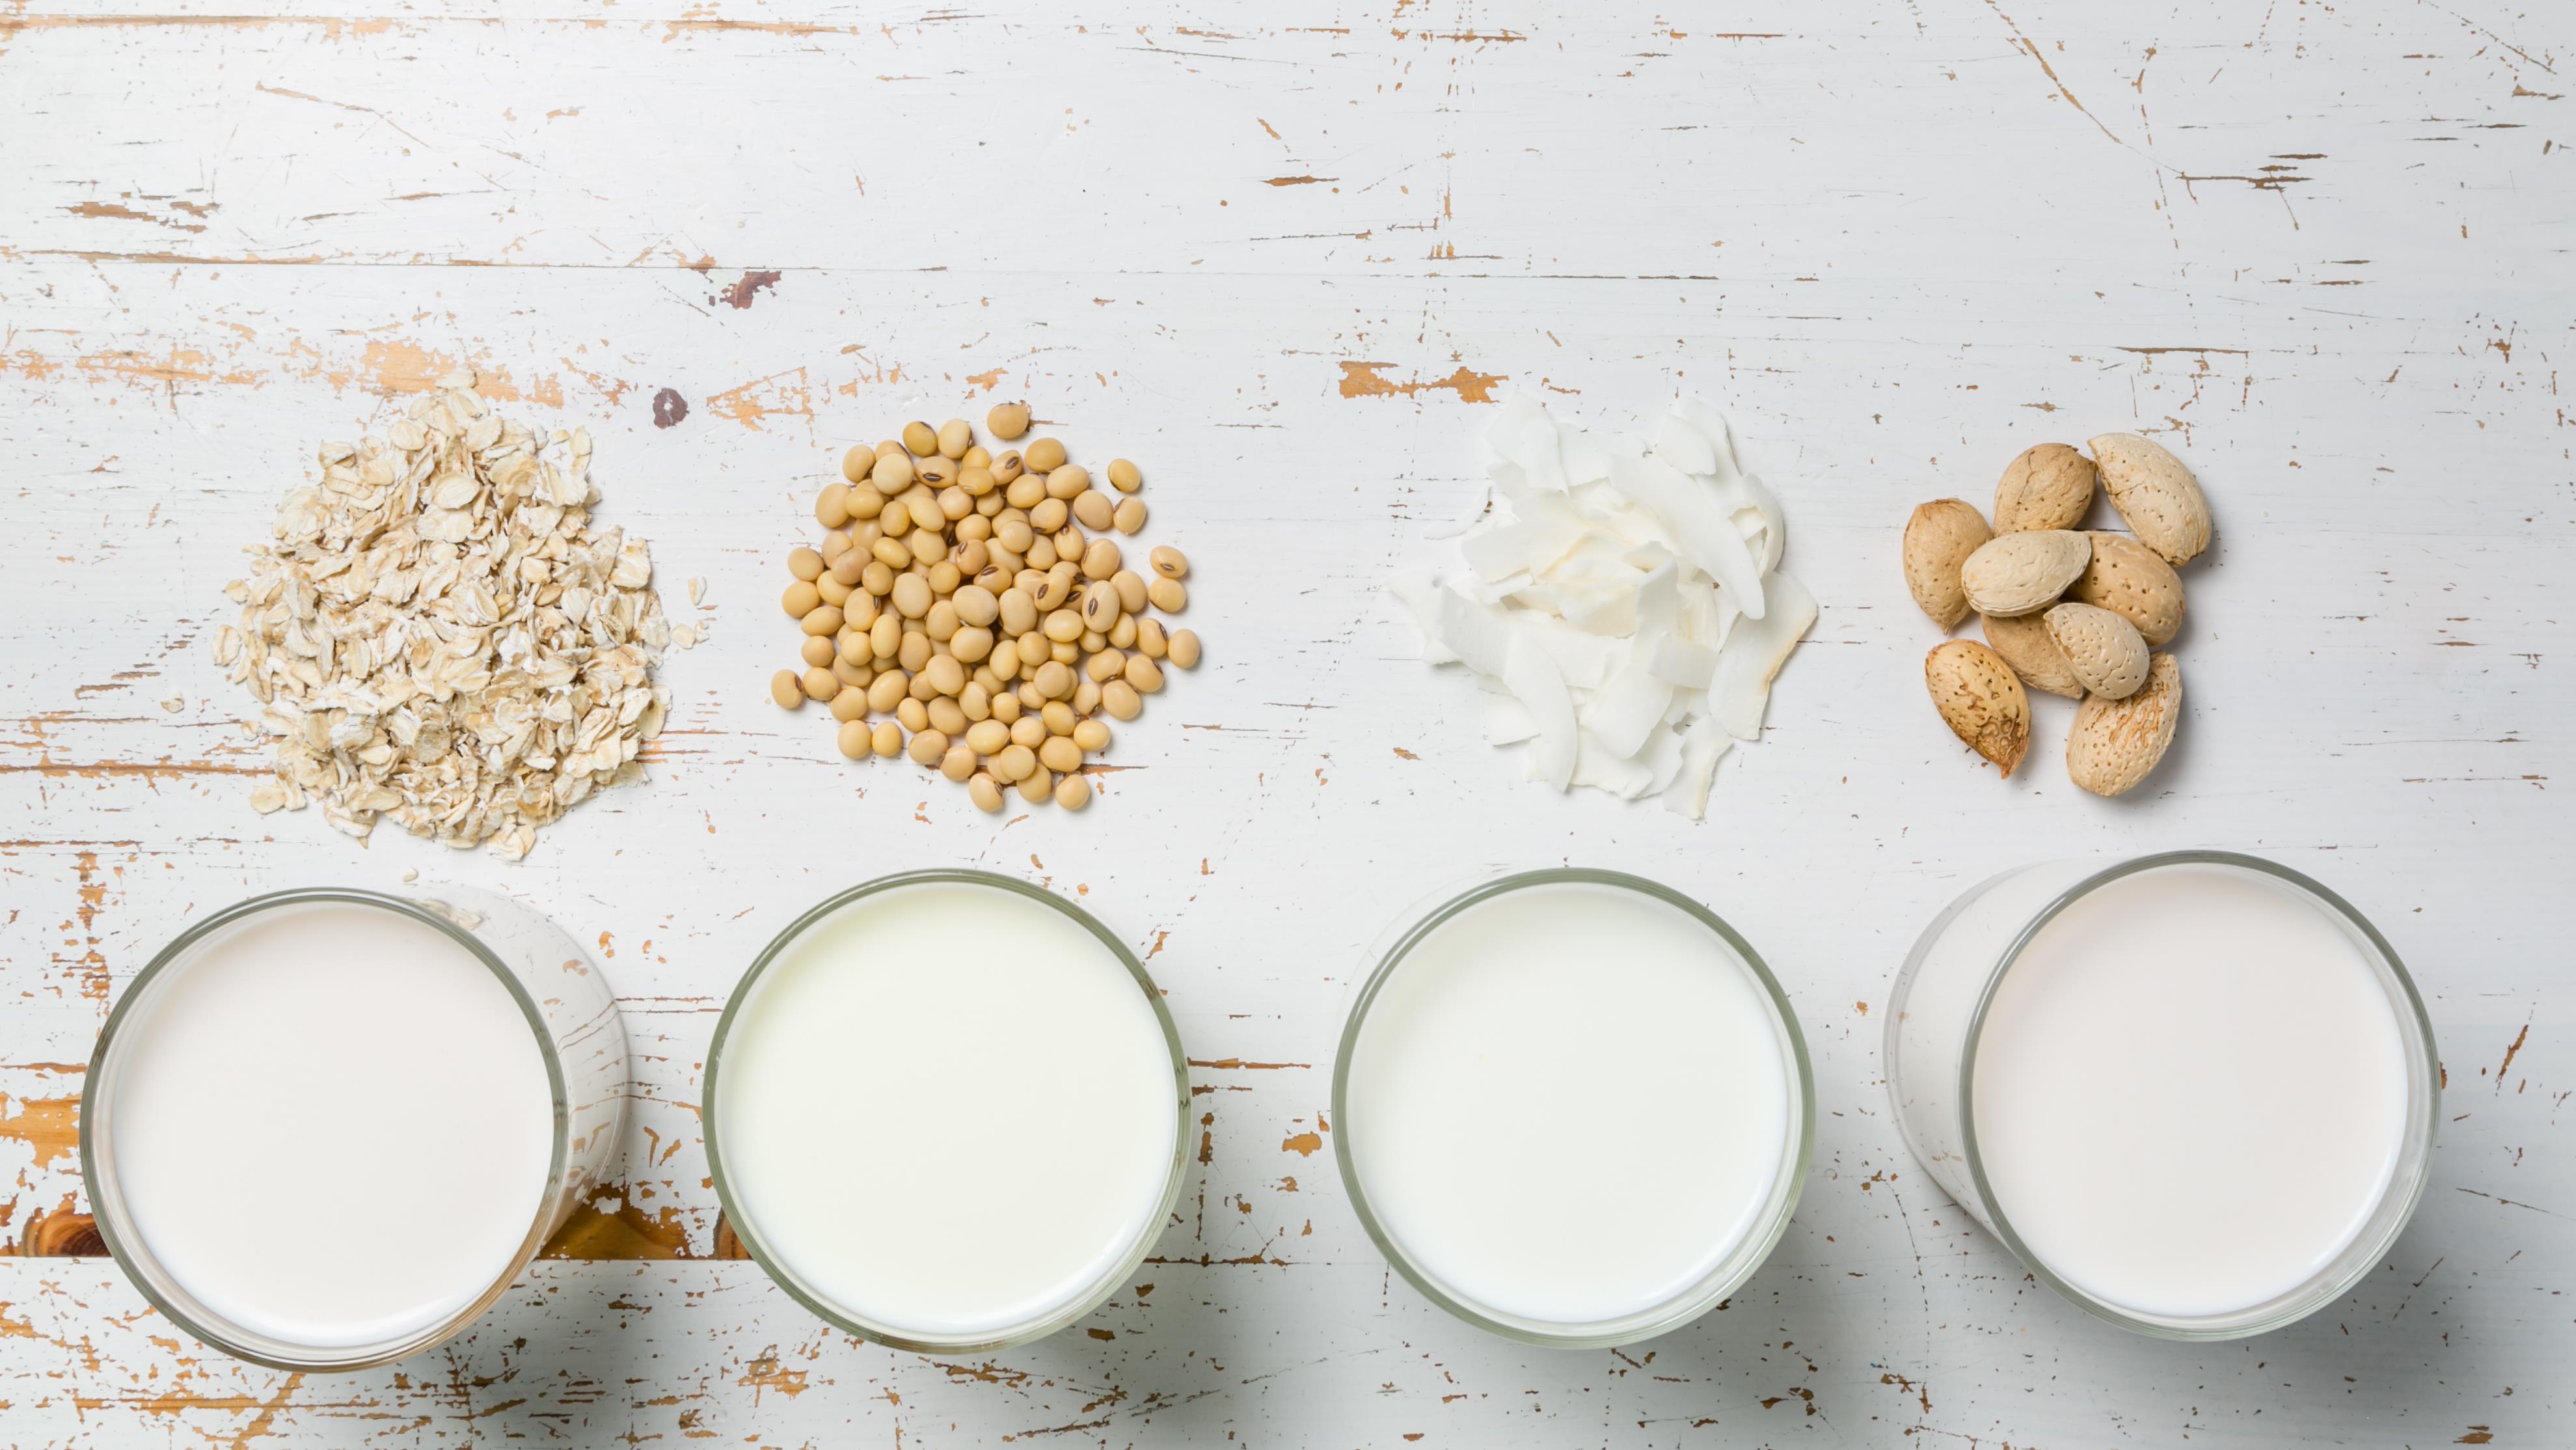 Les meilleurs laits végétaux pour la planète - Fondation David Suzuki